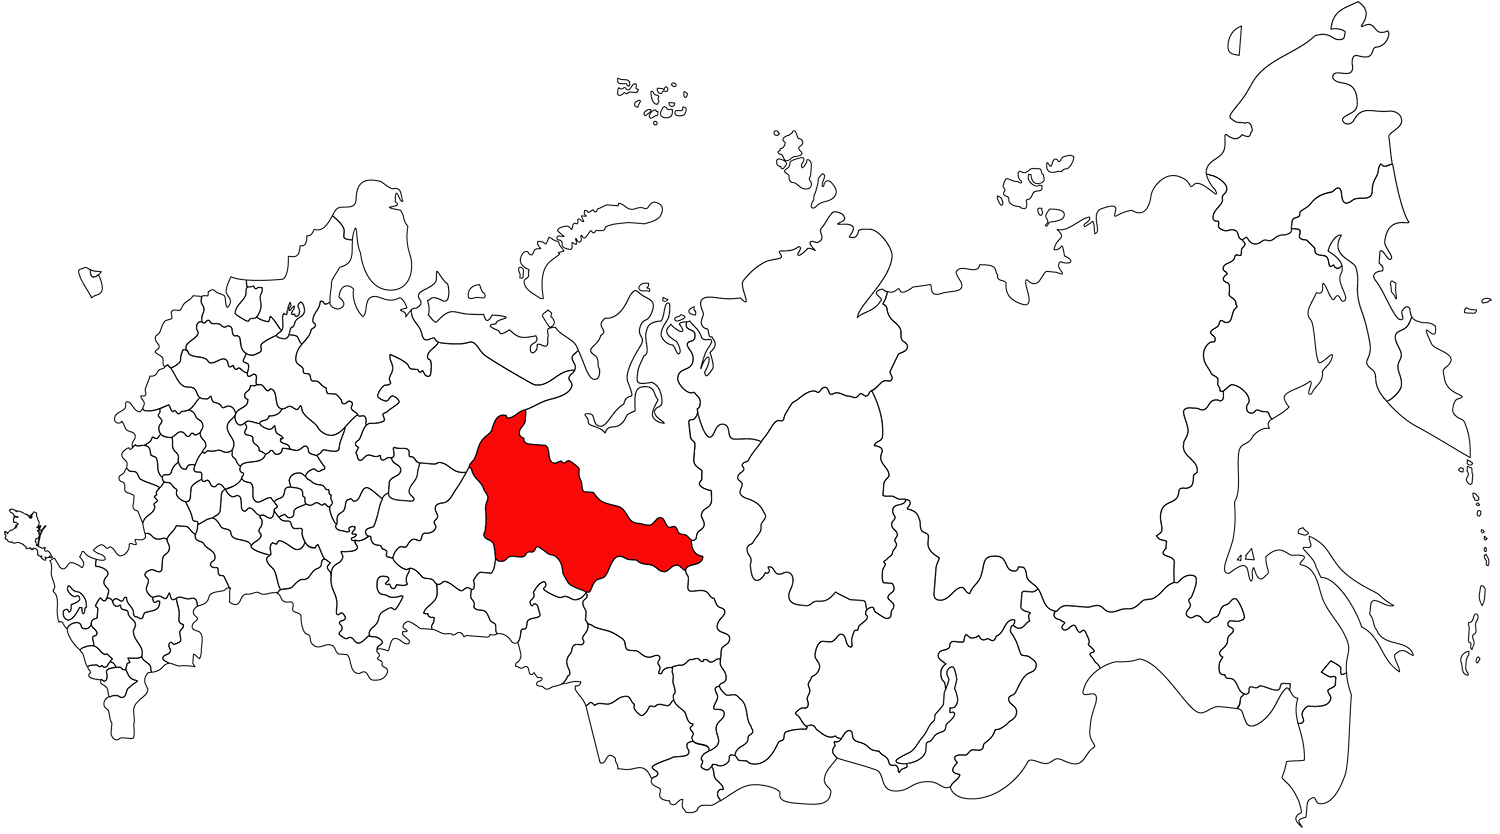 Ханты-Мансийский округ находится примерно в центре России